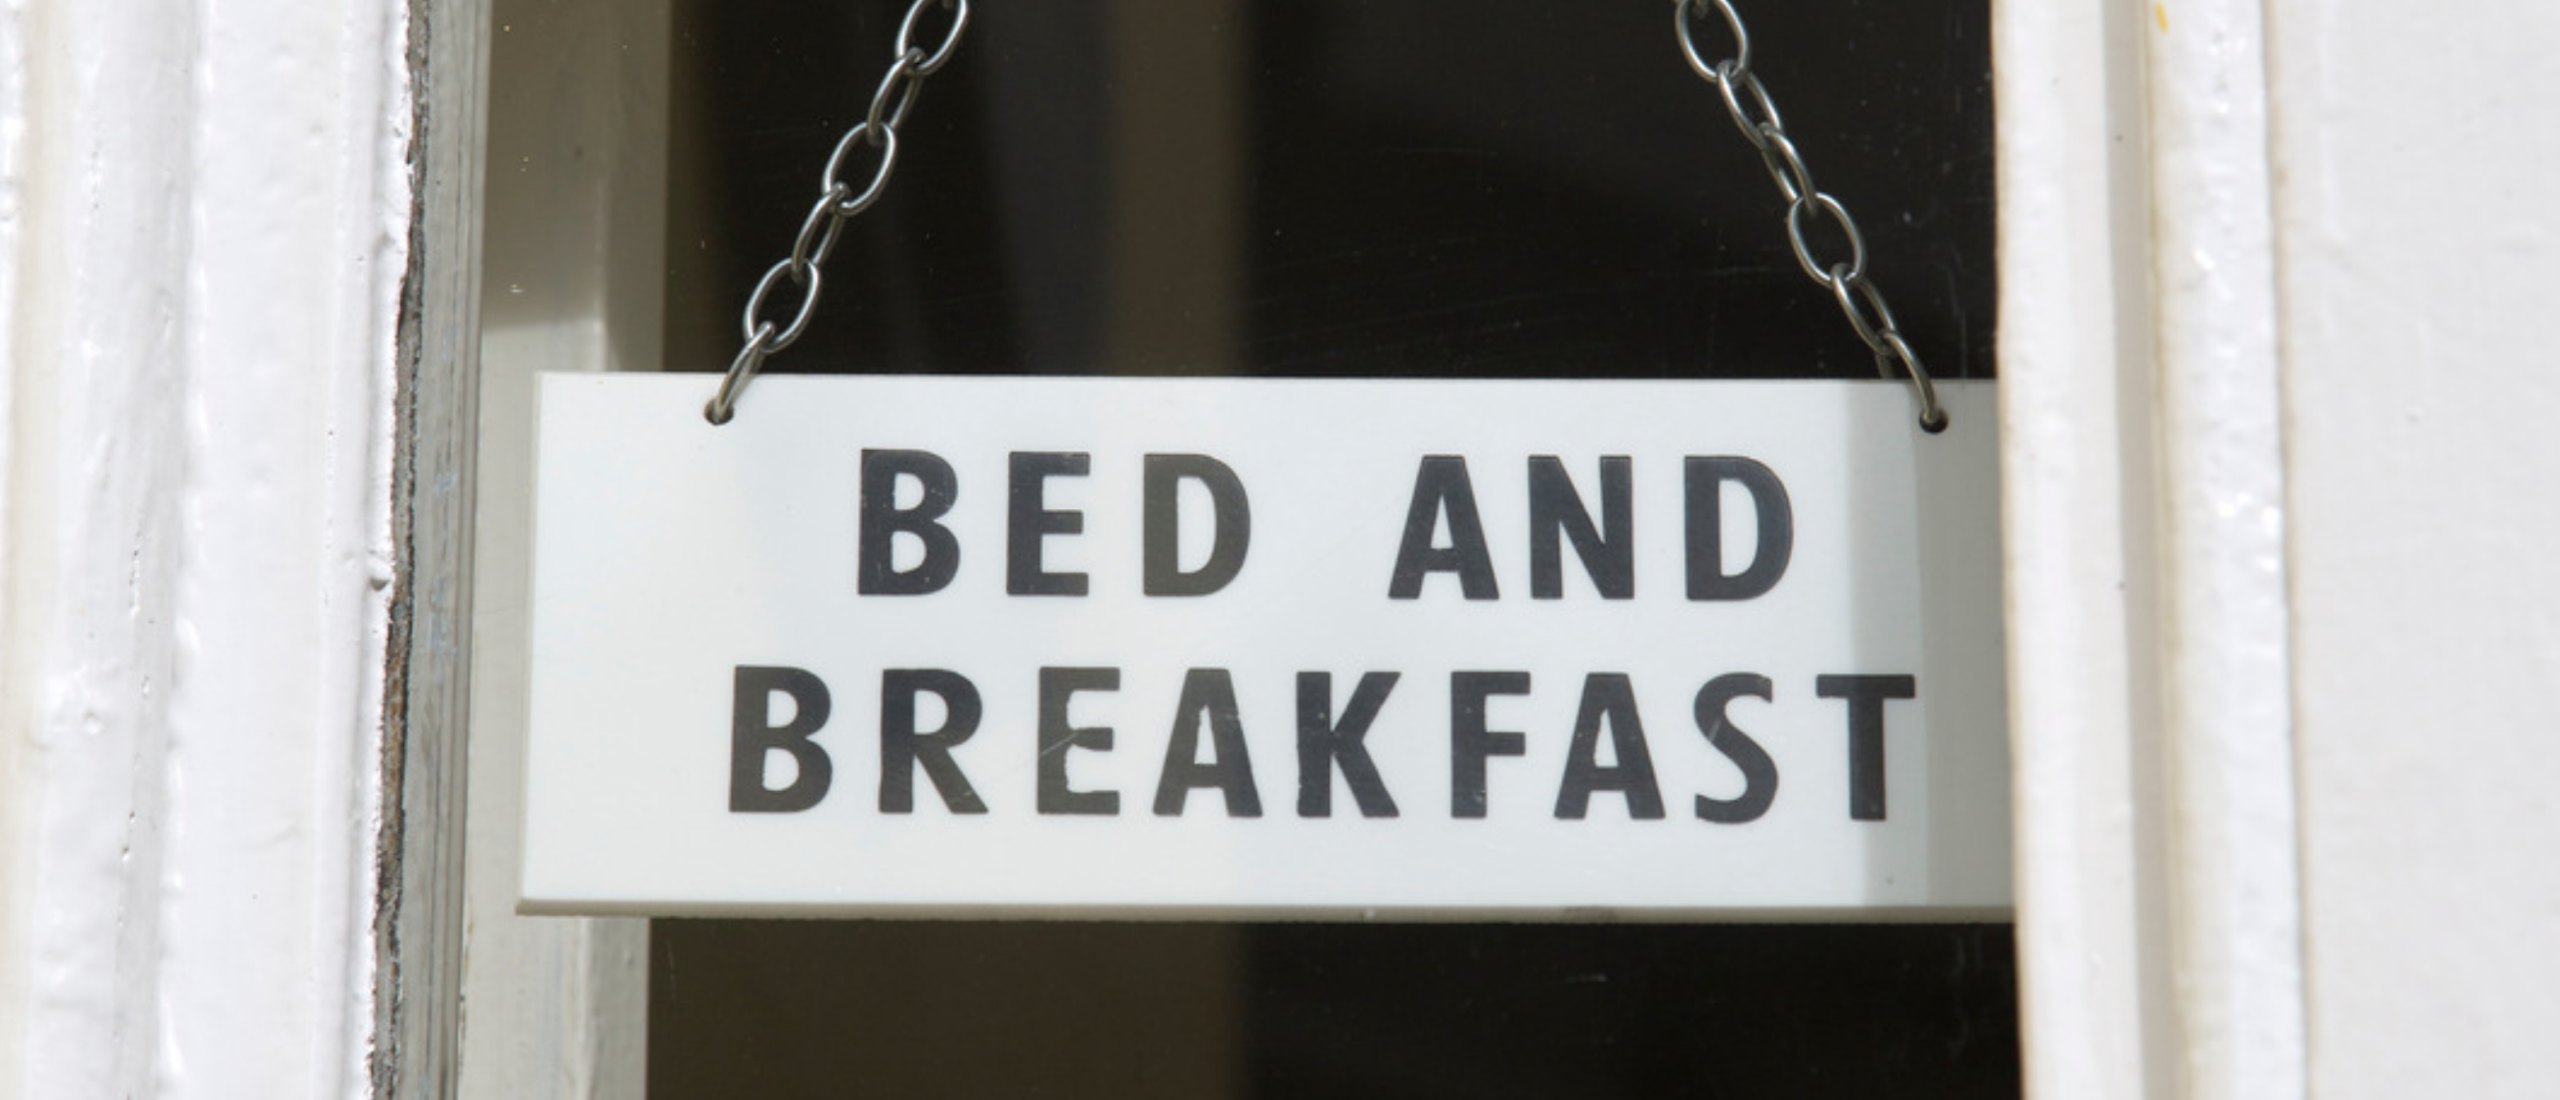 bed-and-breakfast-hotel-pension-camping-vakantiewoningen-verhuren-waar-beginnen-tips-cursus